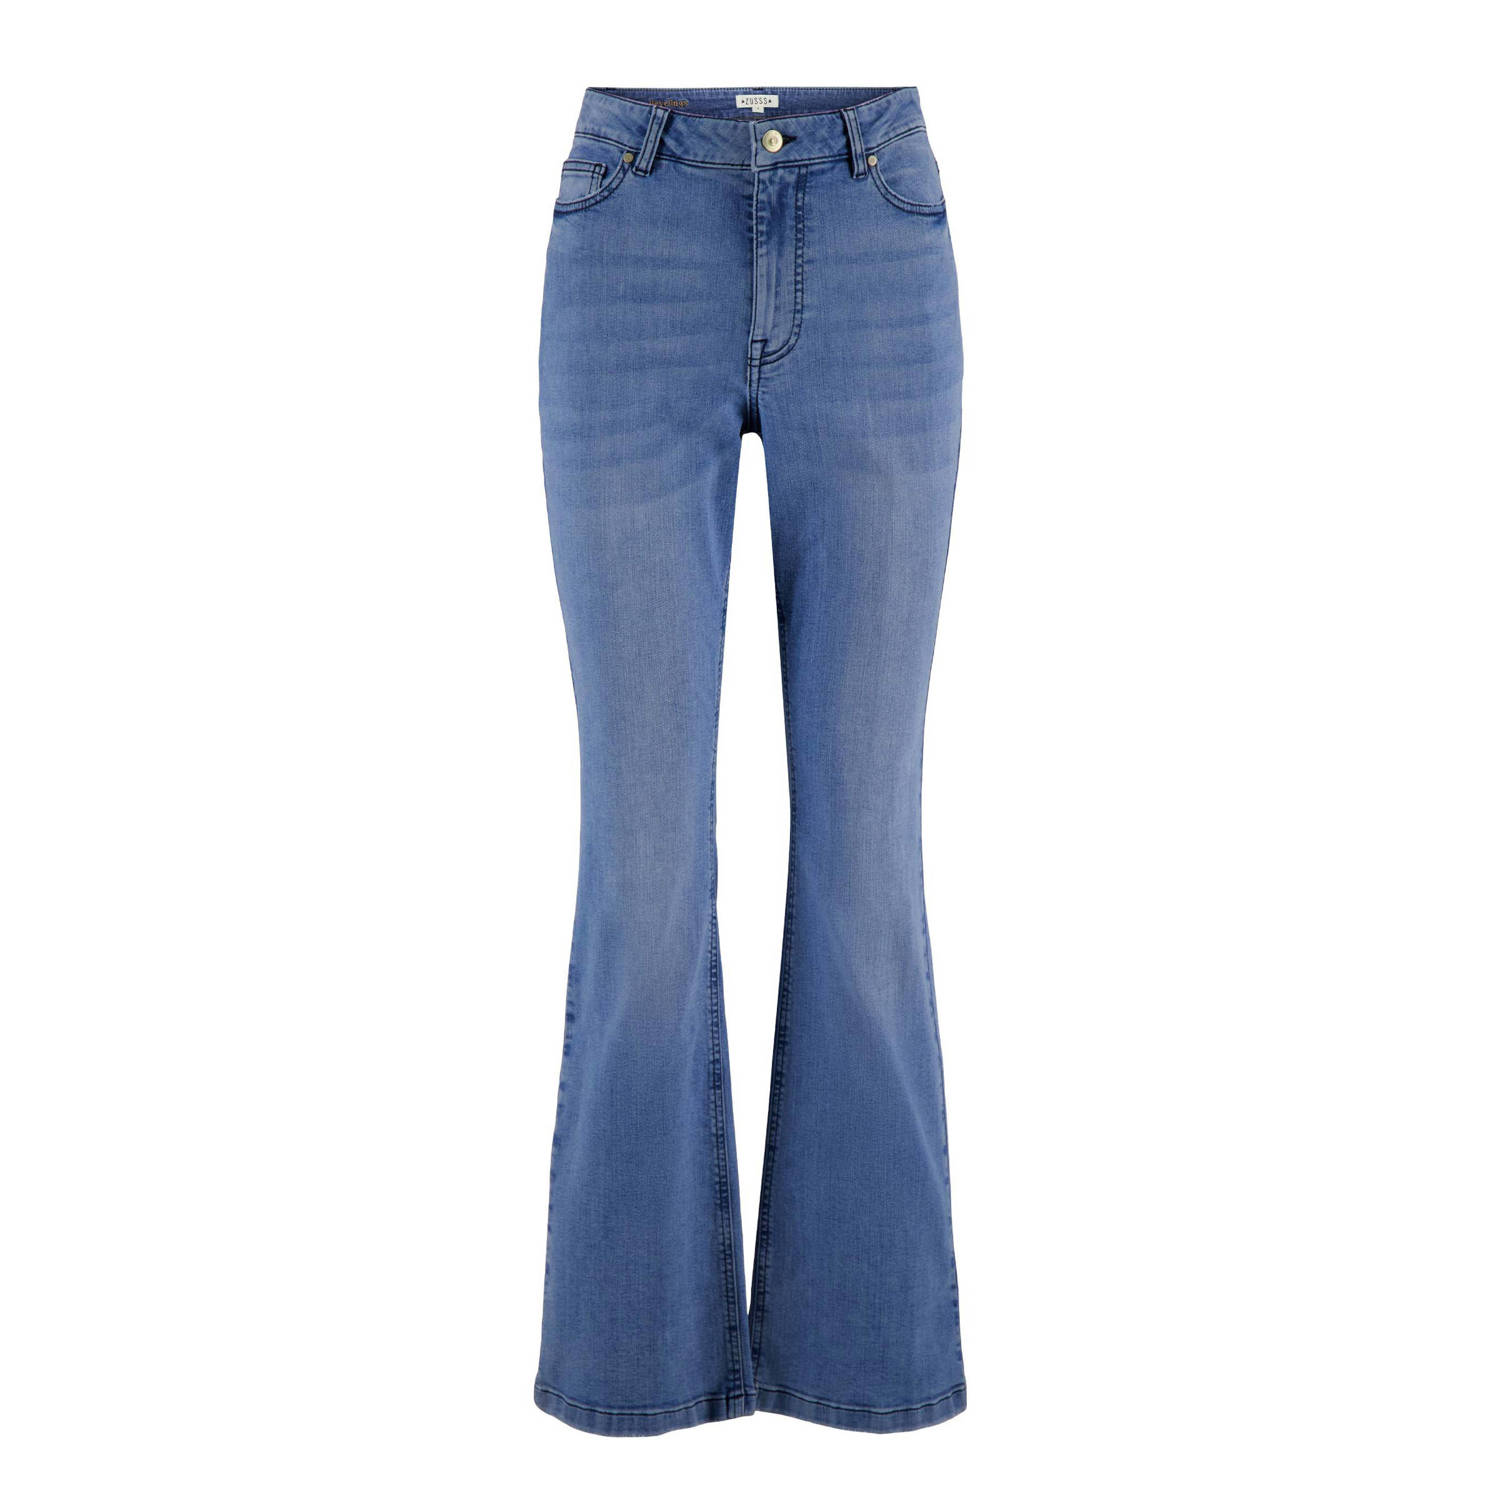 Zusss flared jeans medium blue denim